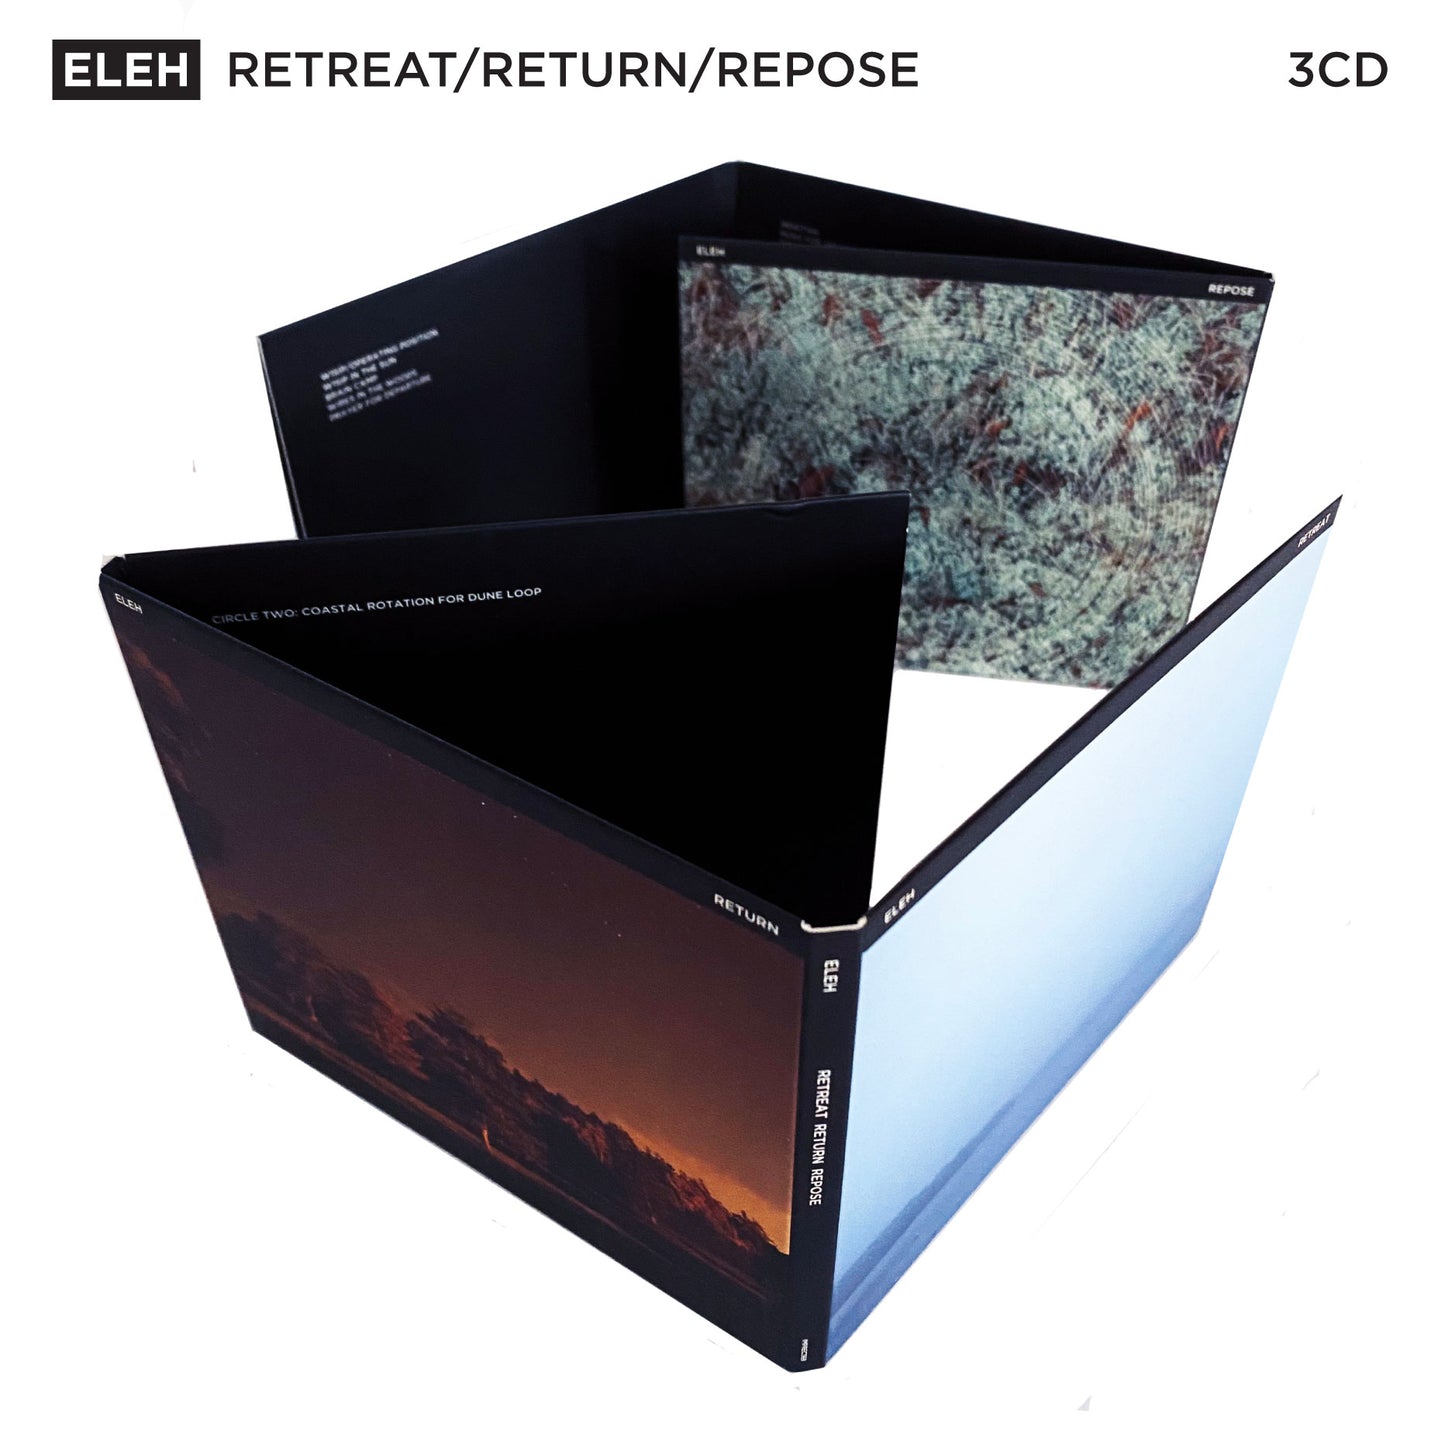 Eleh - Retreat Return Repose - 3CD